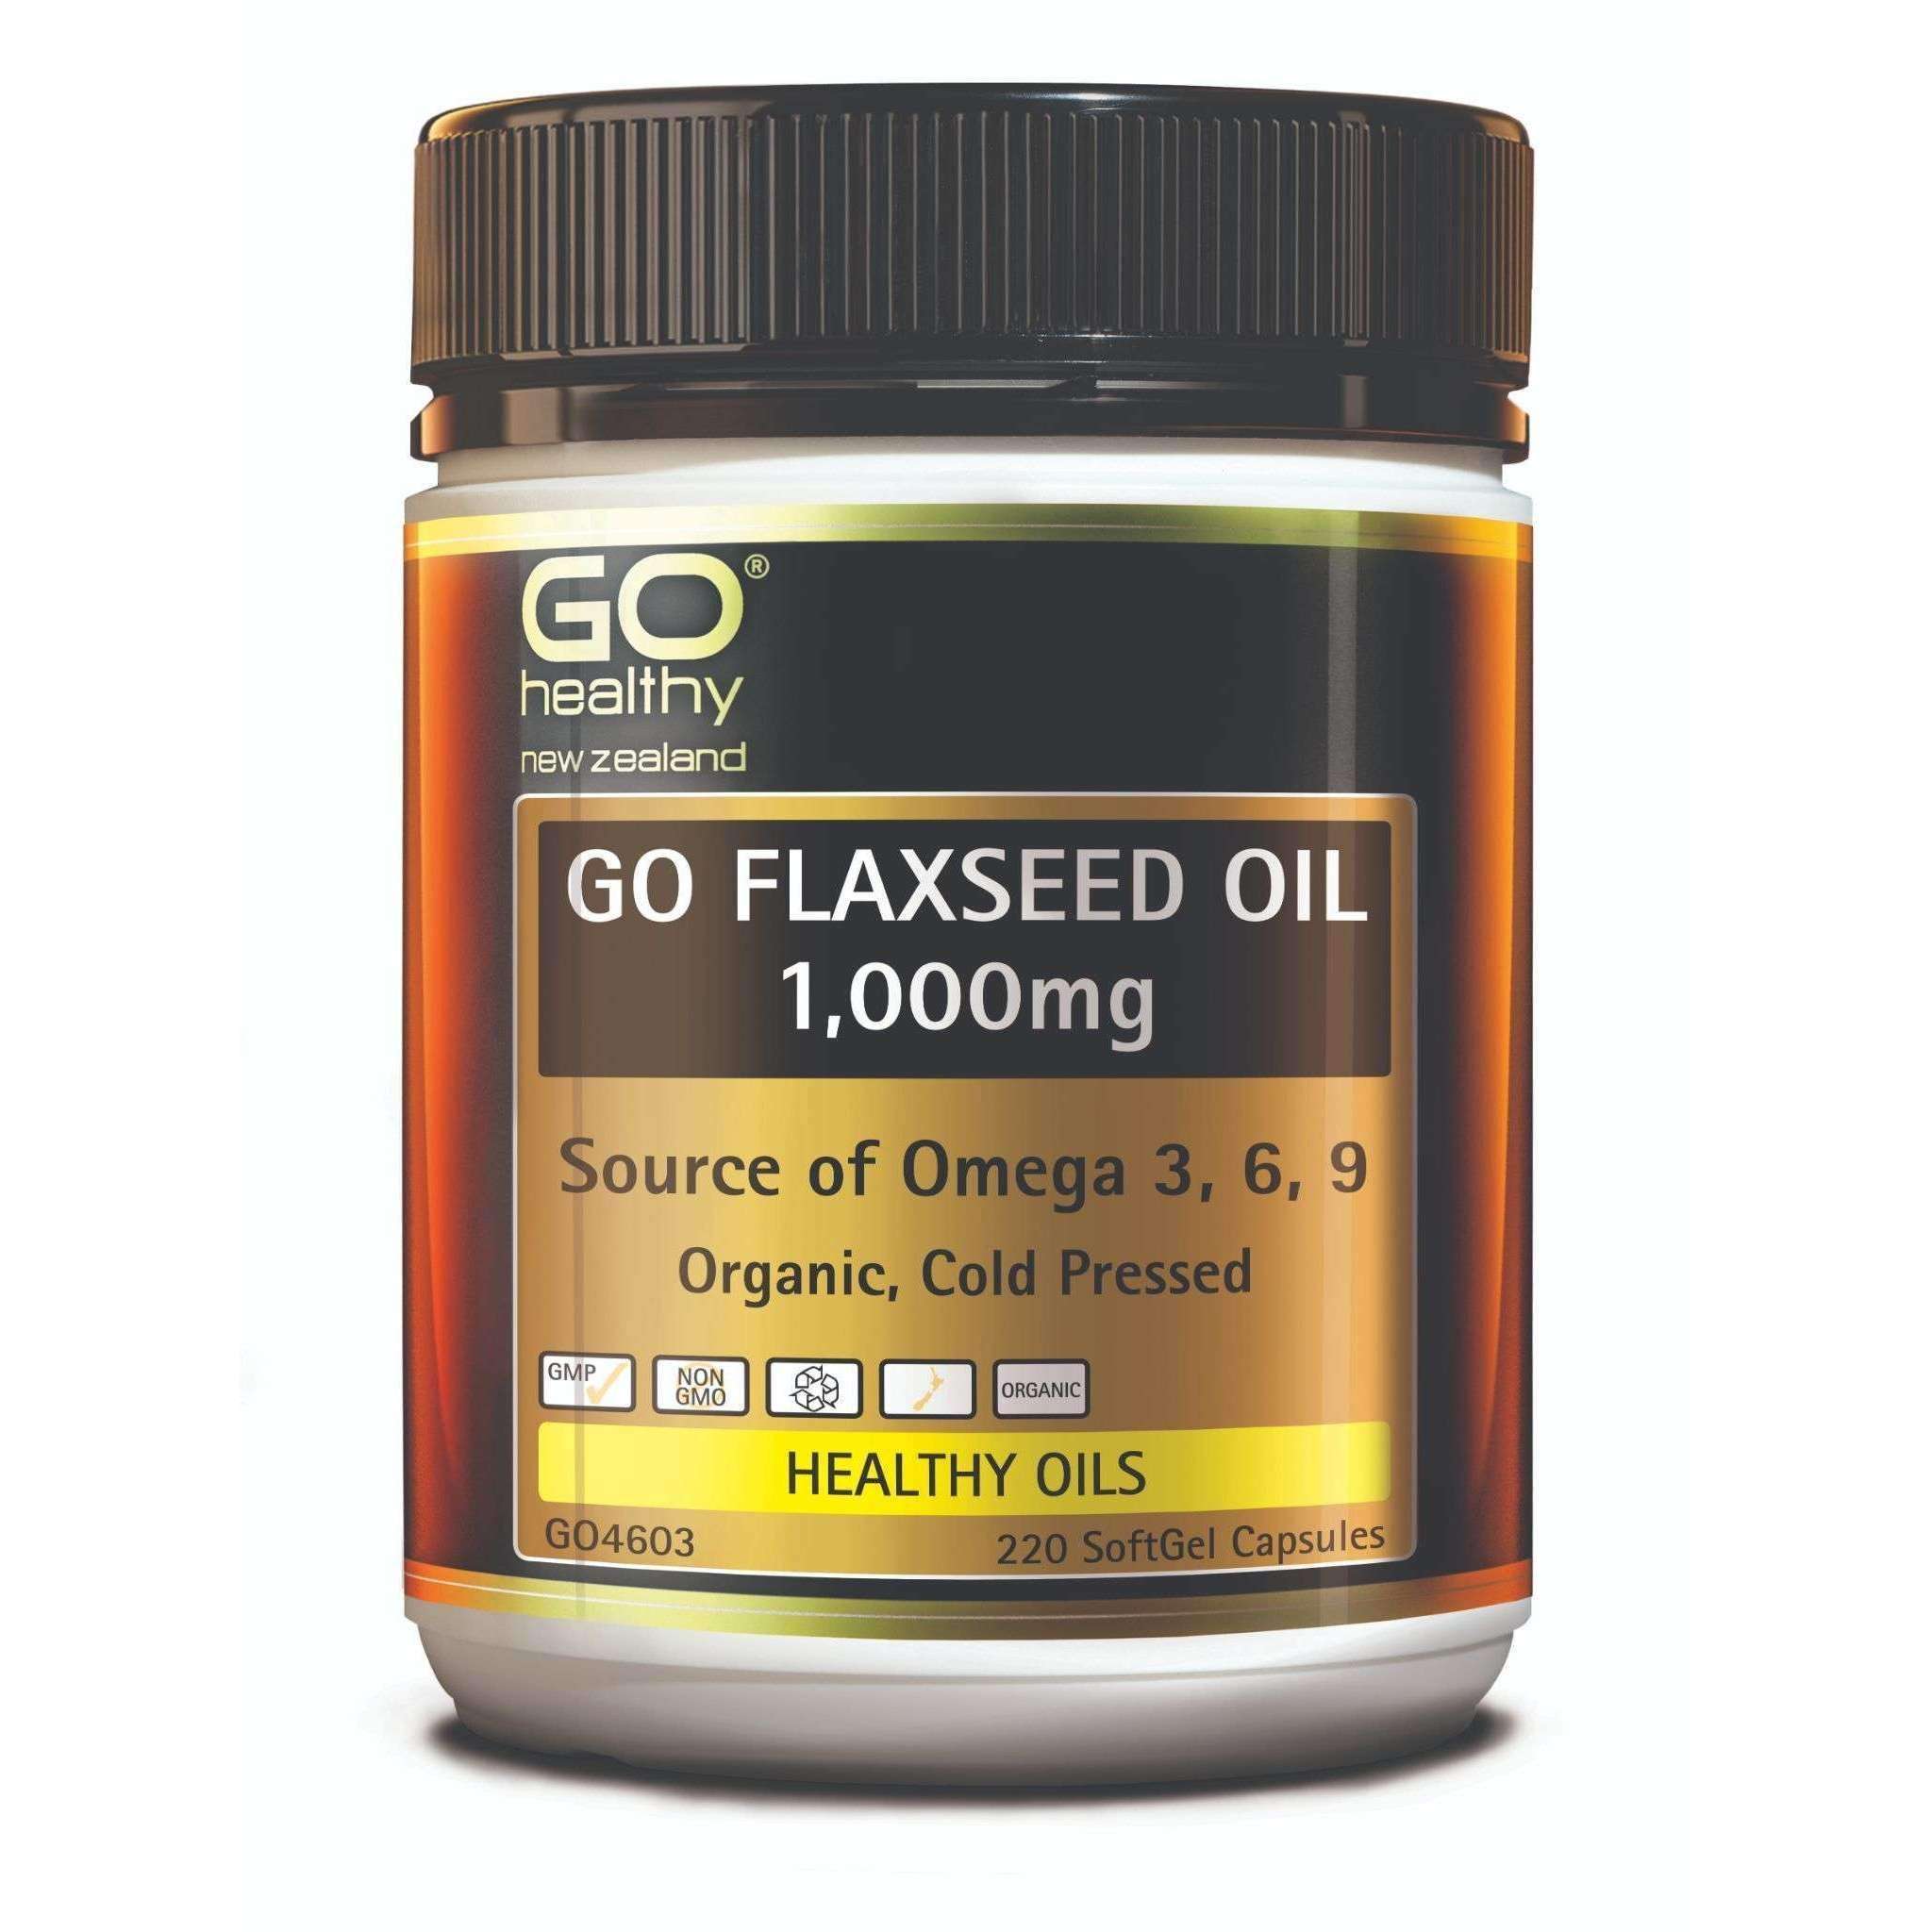 Go Healthy Go Flaxseed Oil 1,000mg